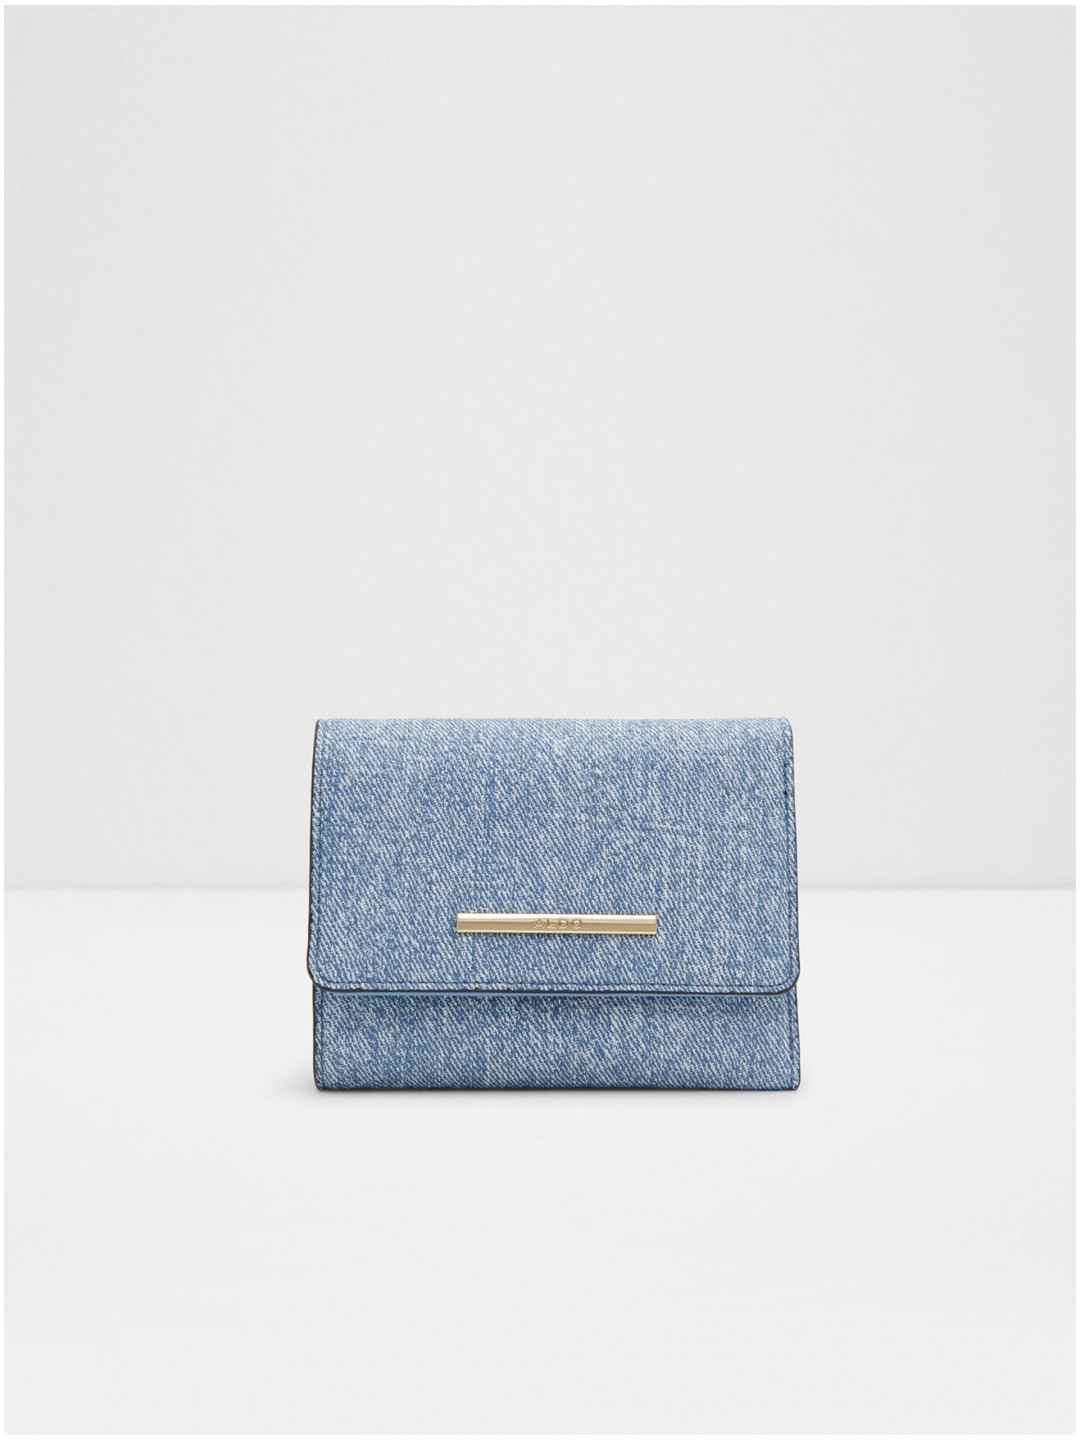 Modrá dámská džínová peněženka ALDO Jonai